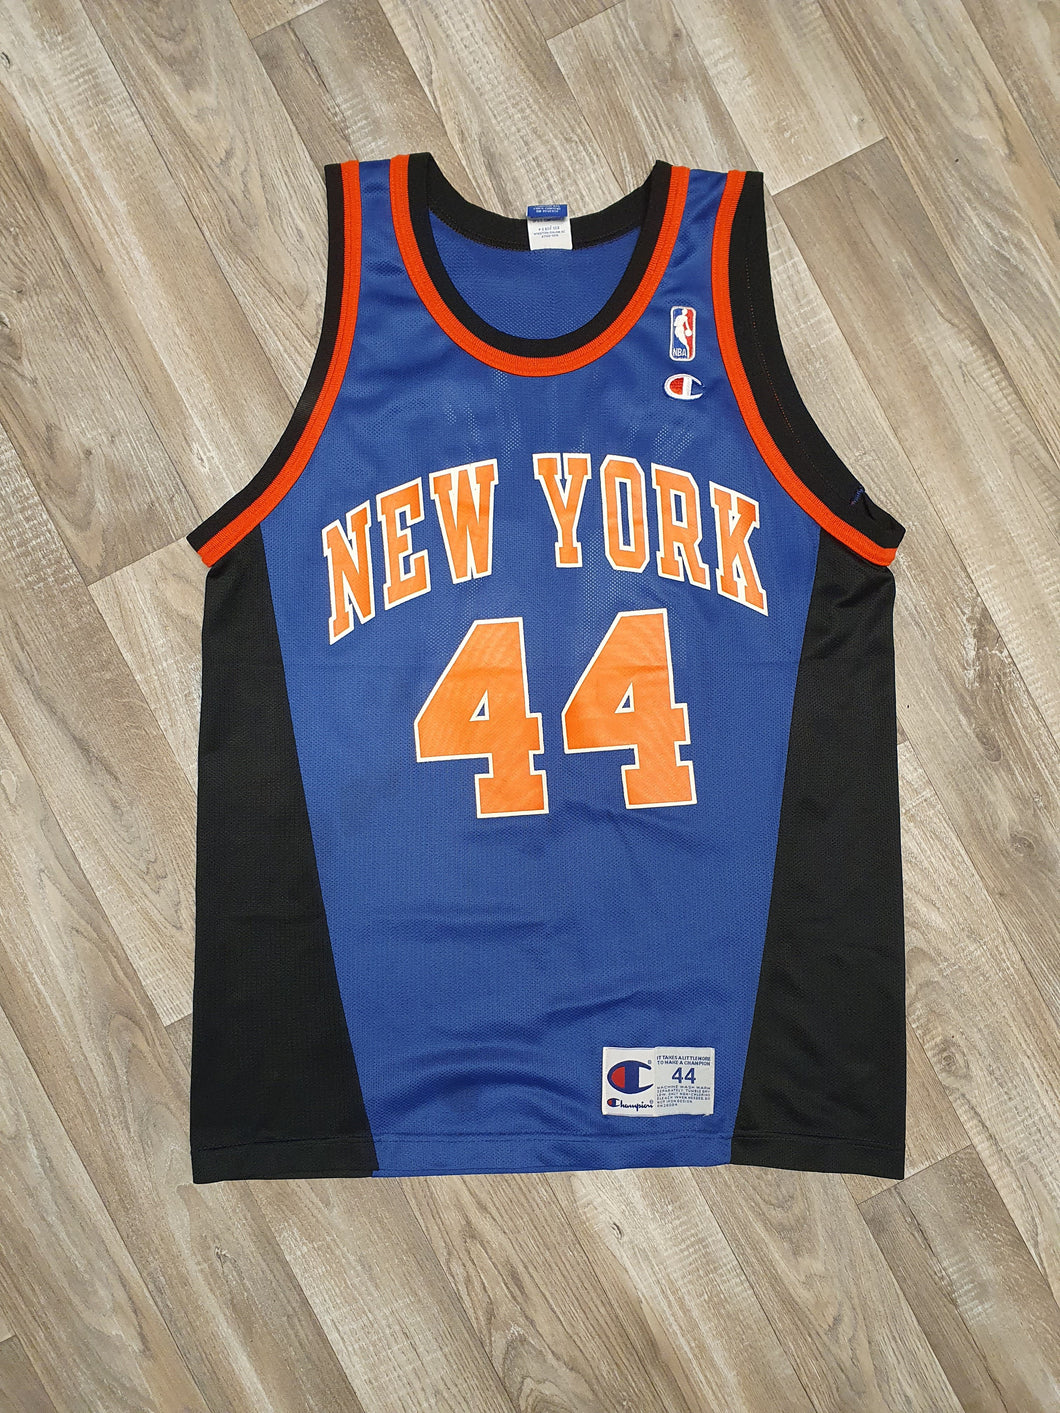 John Wallace New York Knicks Jersey Size Large